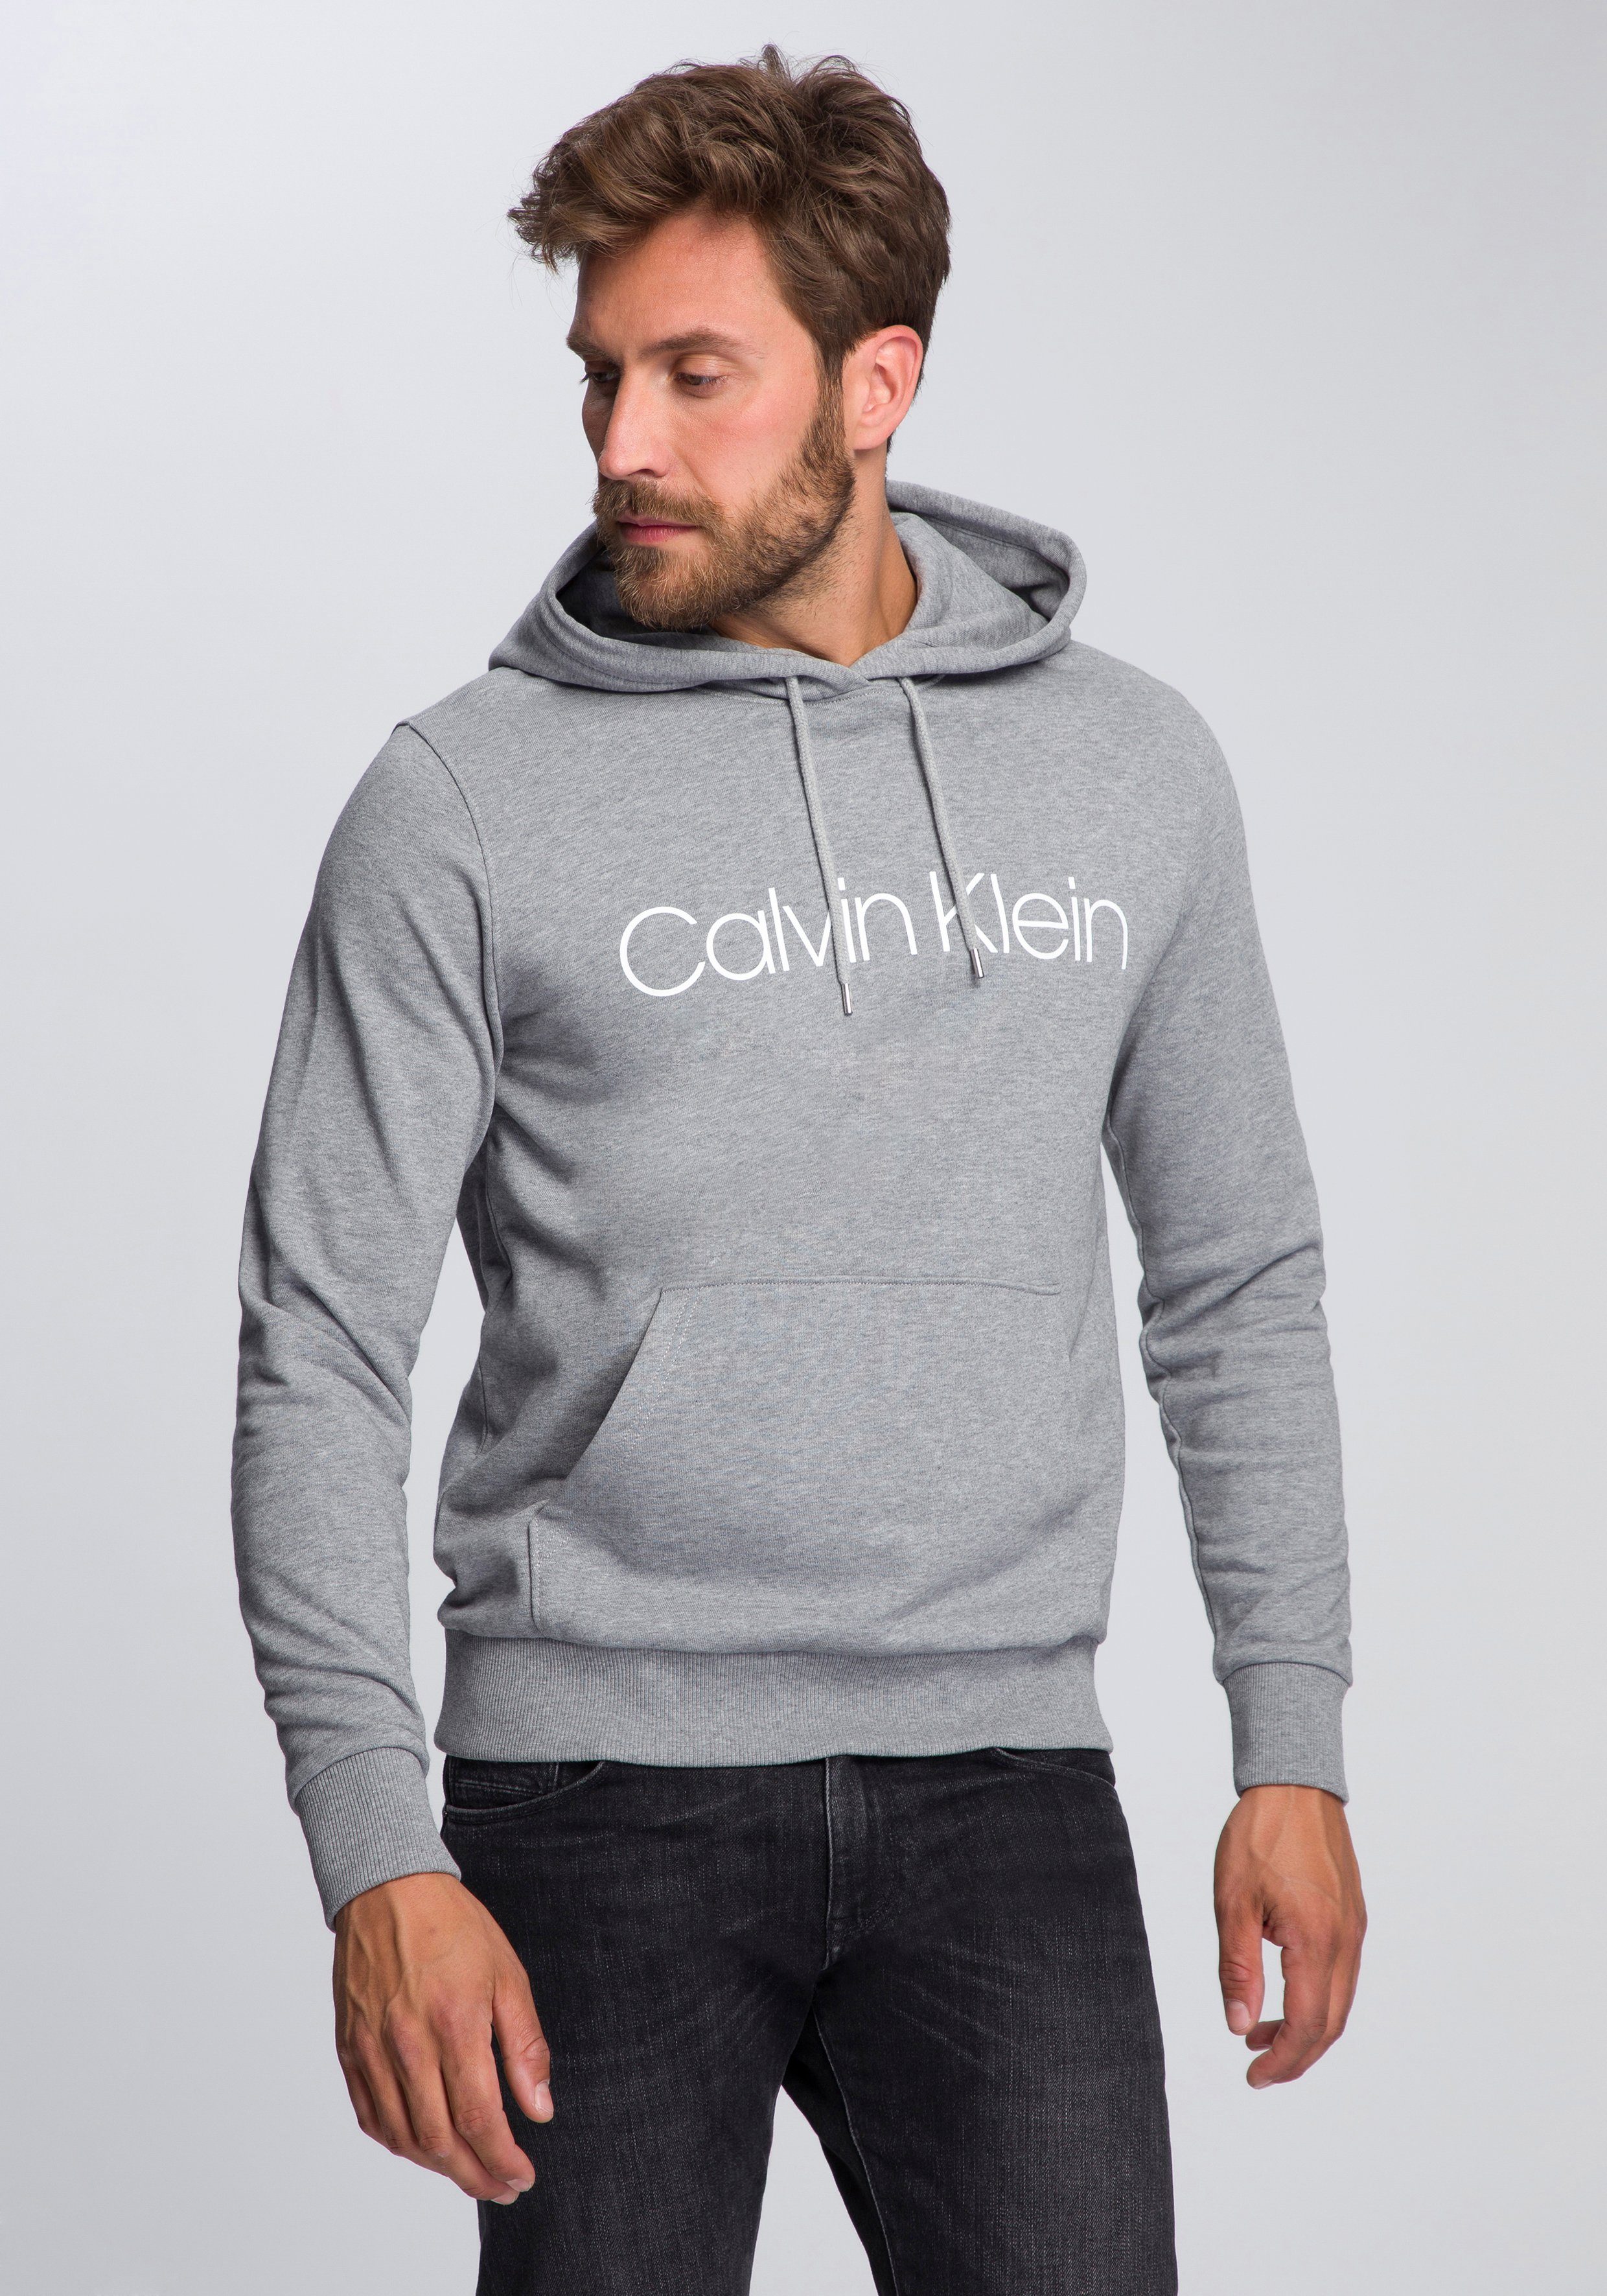 CALVIN KLEIN JEANS Pullover Herren online kaufen | OTTO